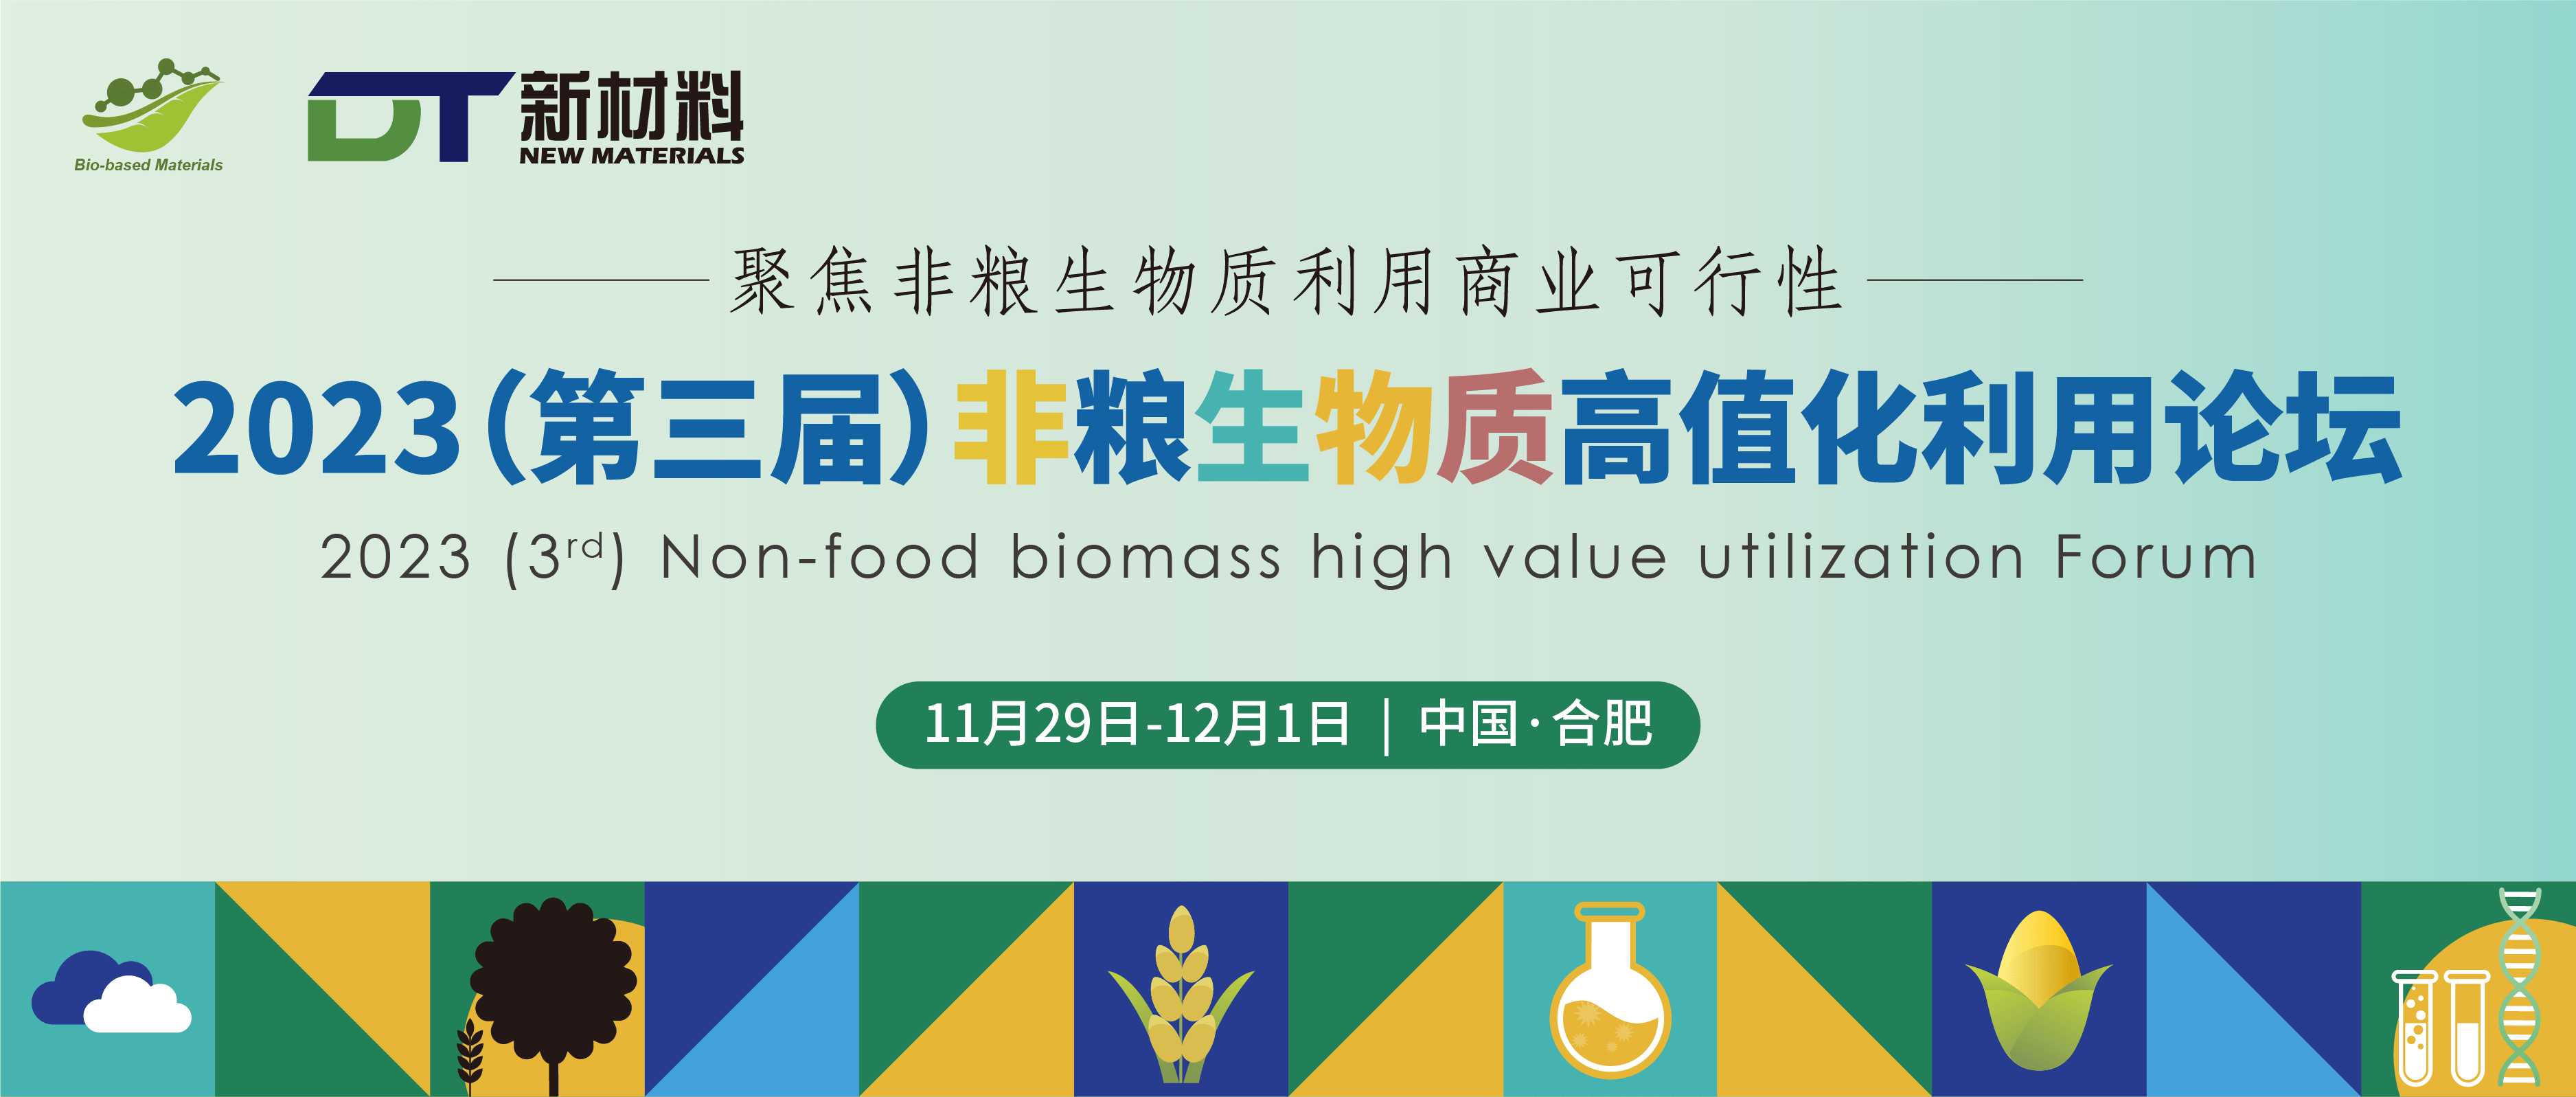 2023(第三屆)非糧生物質高值化利用論壇